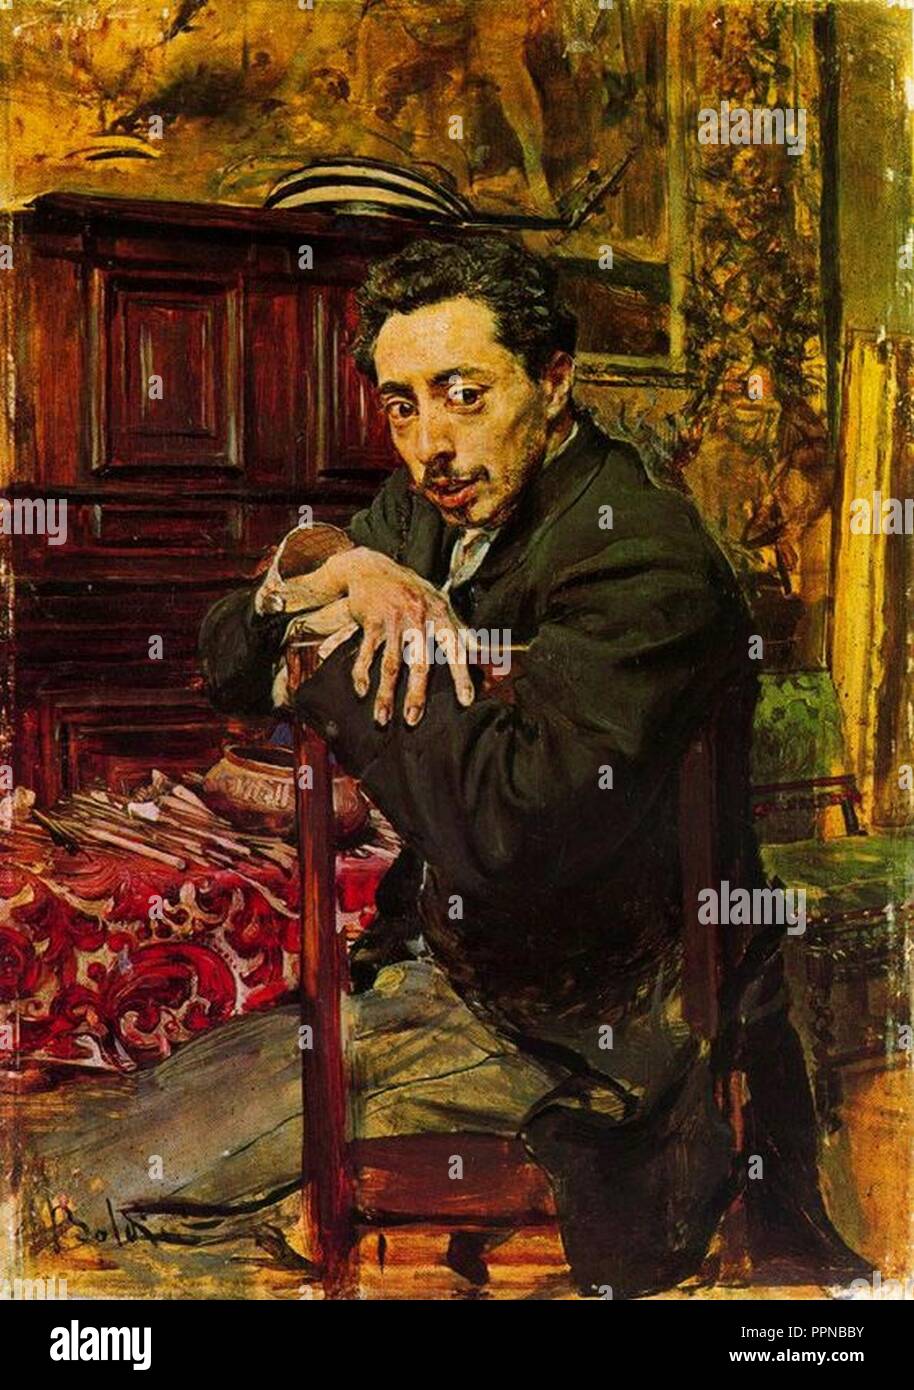 Boldini- ritratto del pittore joaquin ruano. Stock Photo